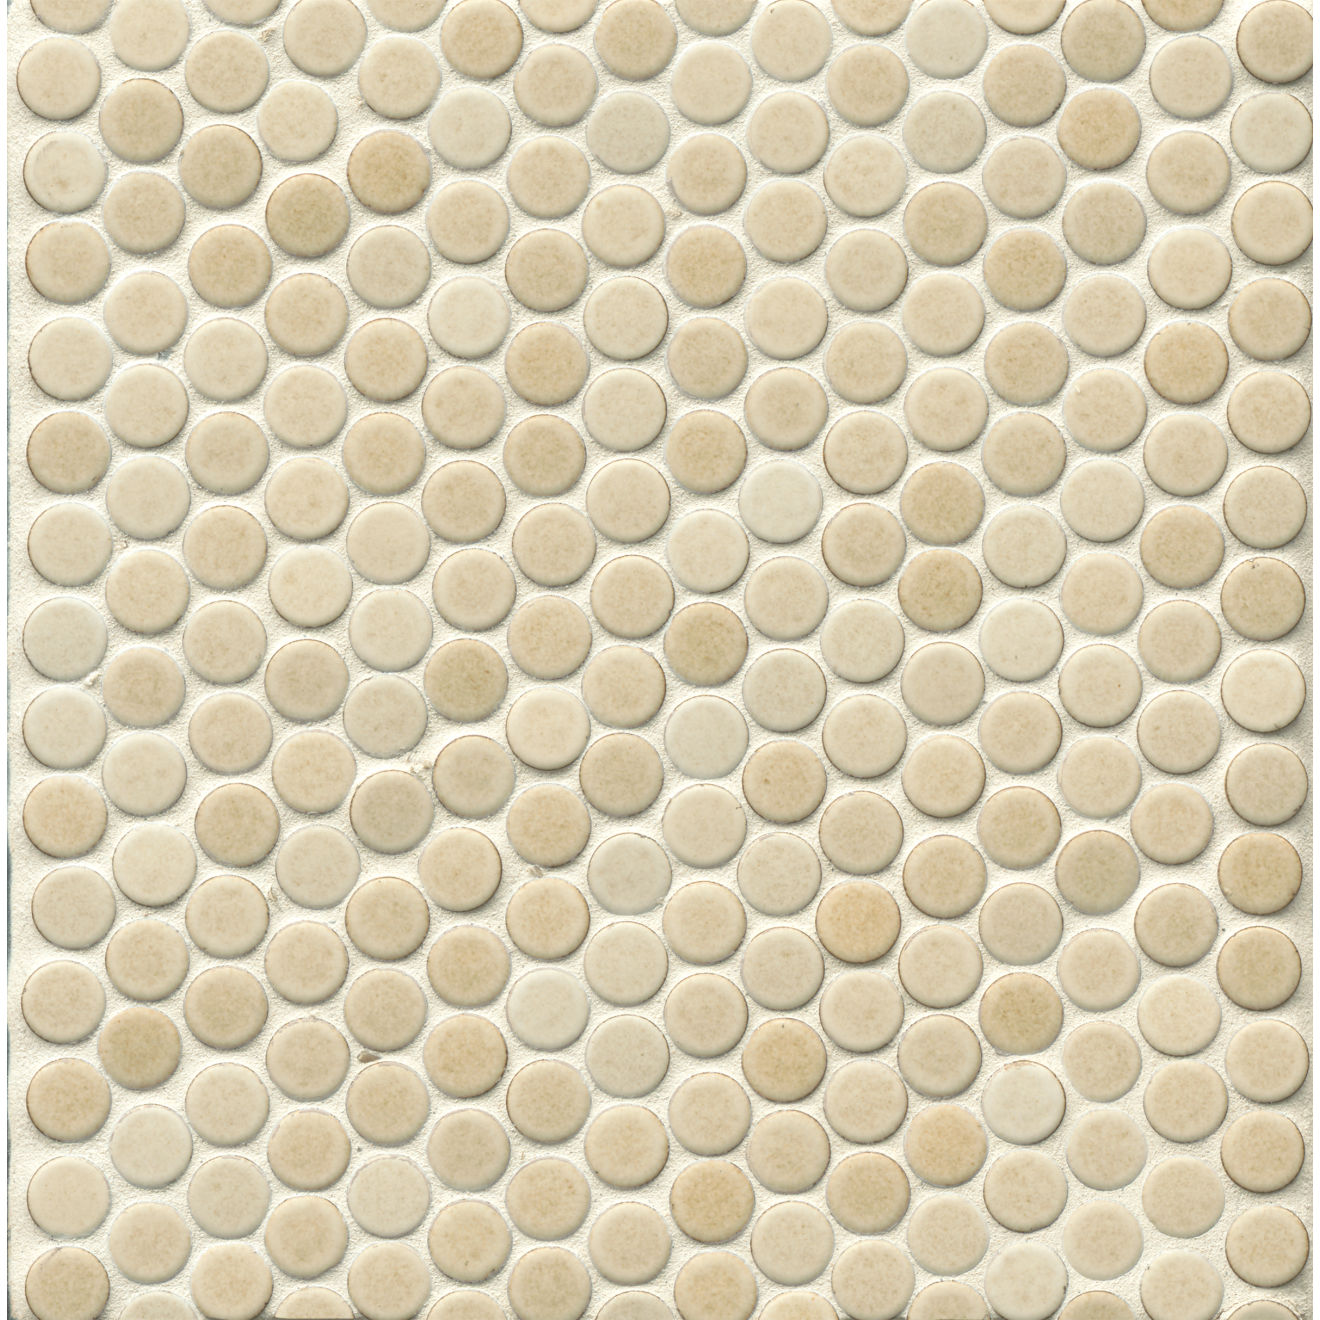 Beige tile on beige background 